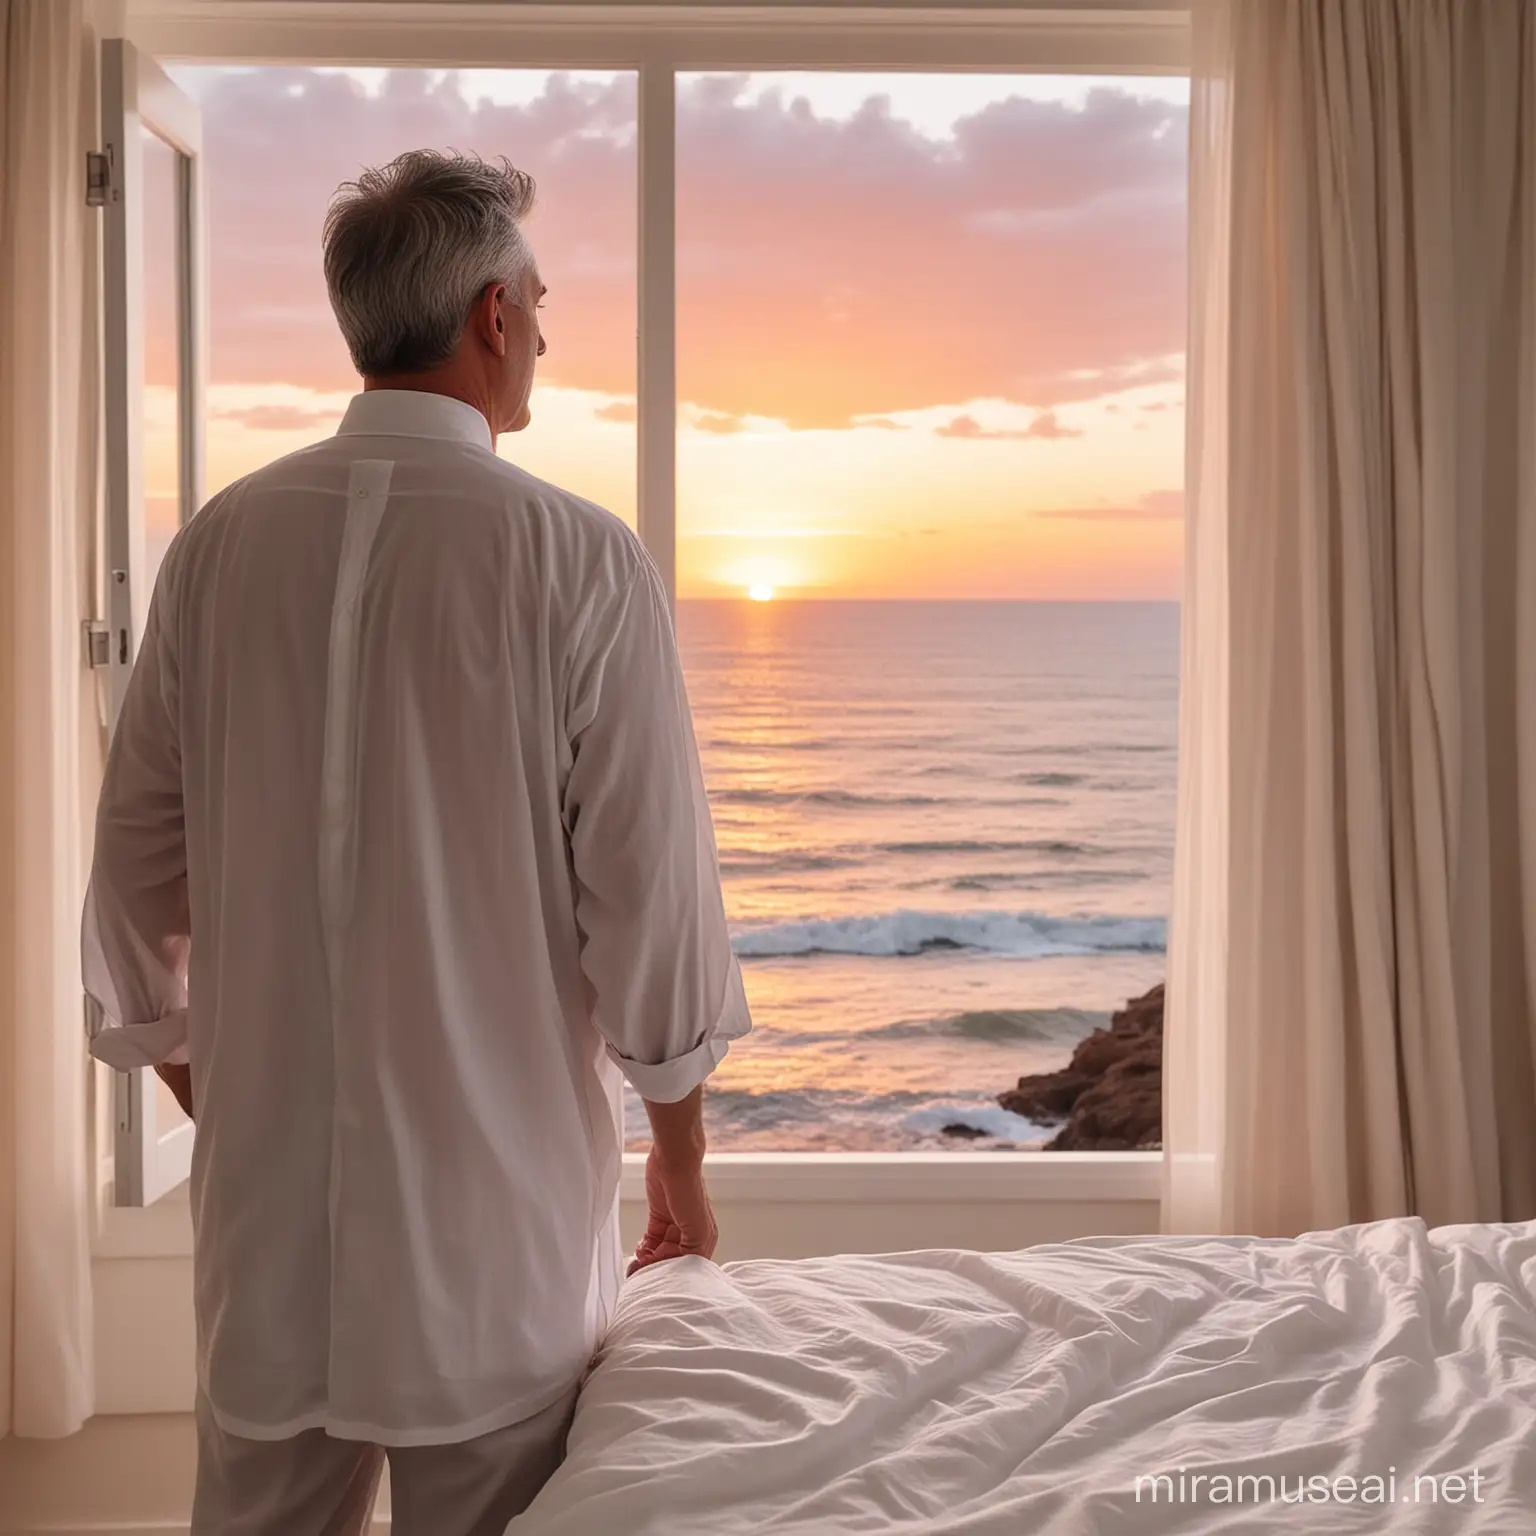 Un hombre de mediana edad con canas en el cabello y vestido con una túnica blanca está de espaldas y mirando por una  ventana por la que se ve el mar en un atardecer con el cielo rojizo. Delante de él hay una cama desecha con sábanas blancas